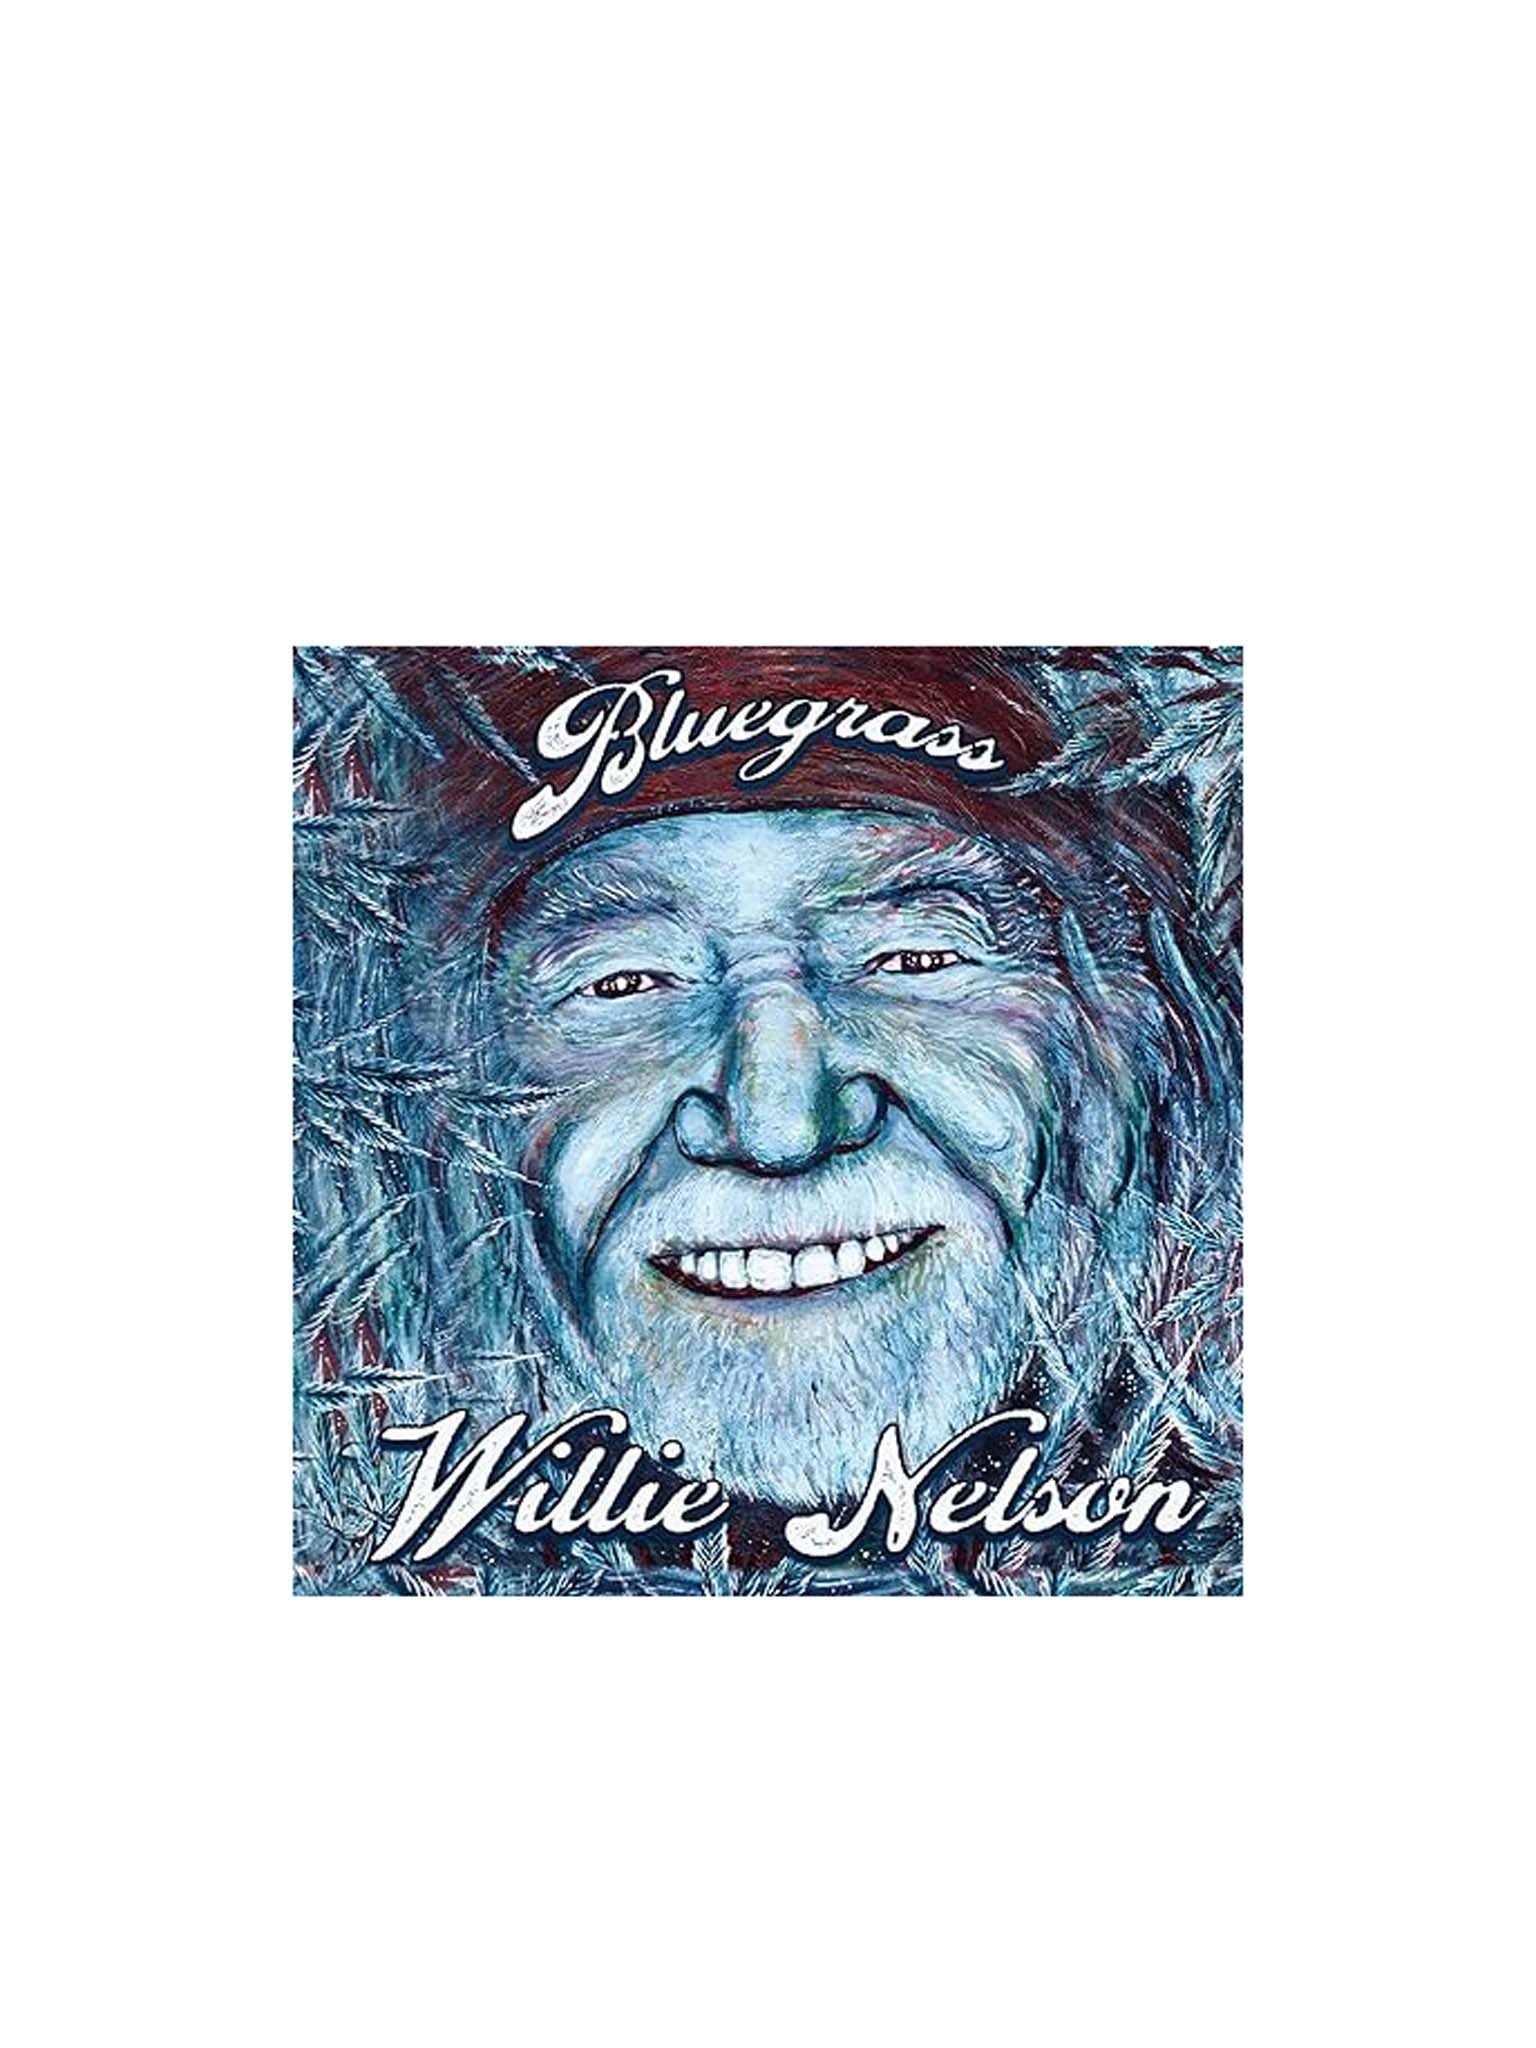 Willie Nelson: Bluegrass (CD)